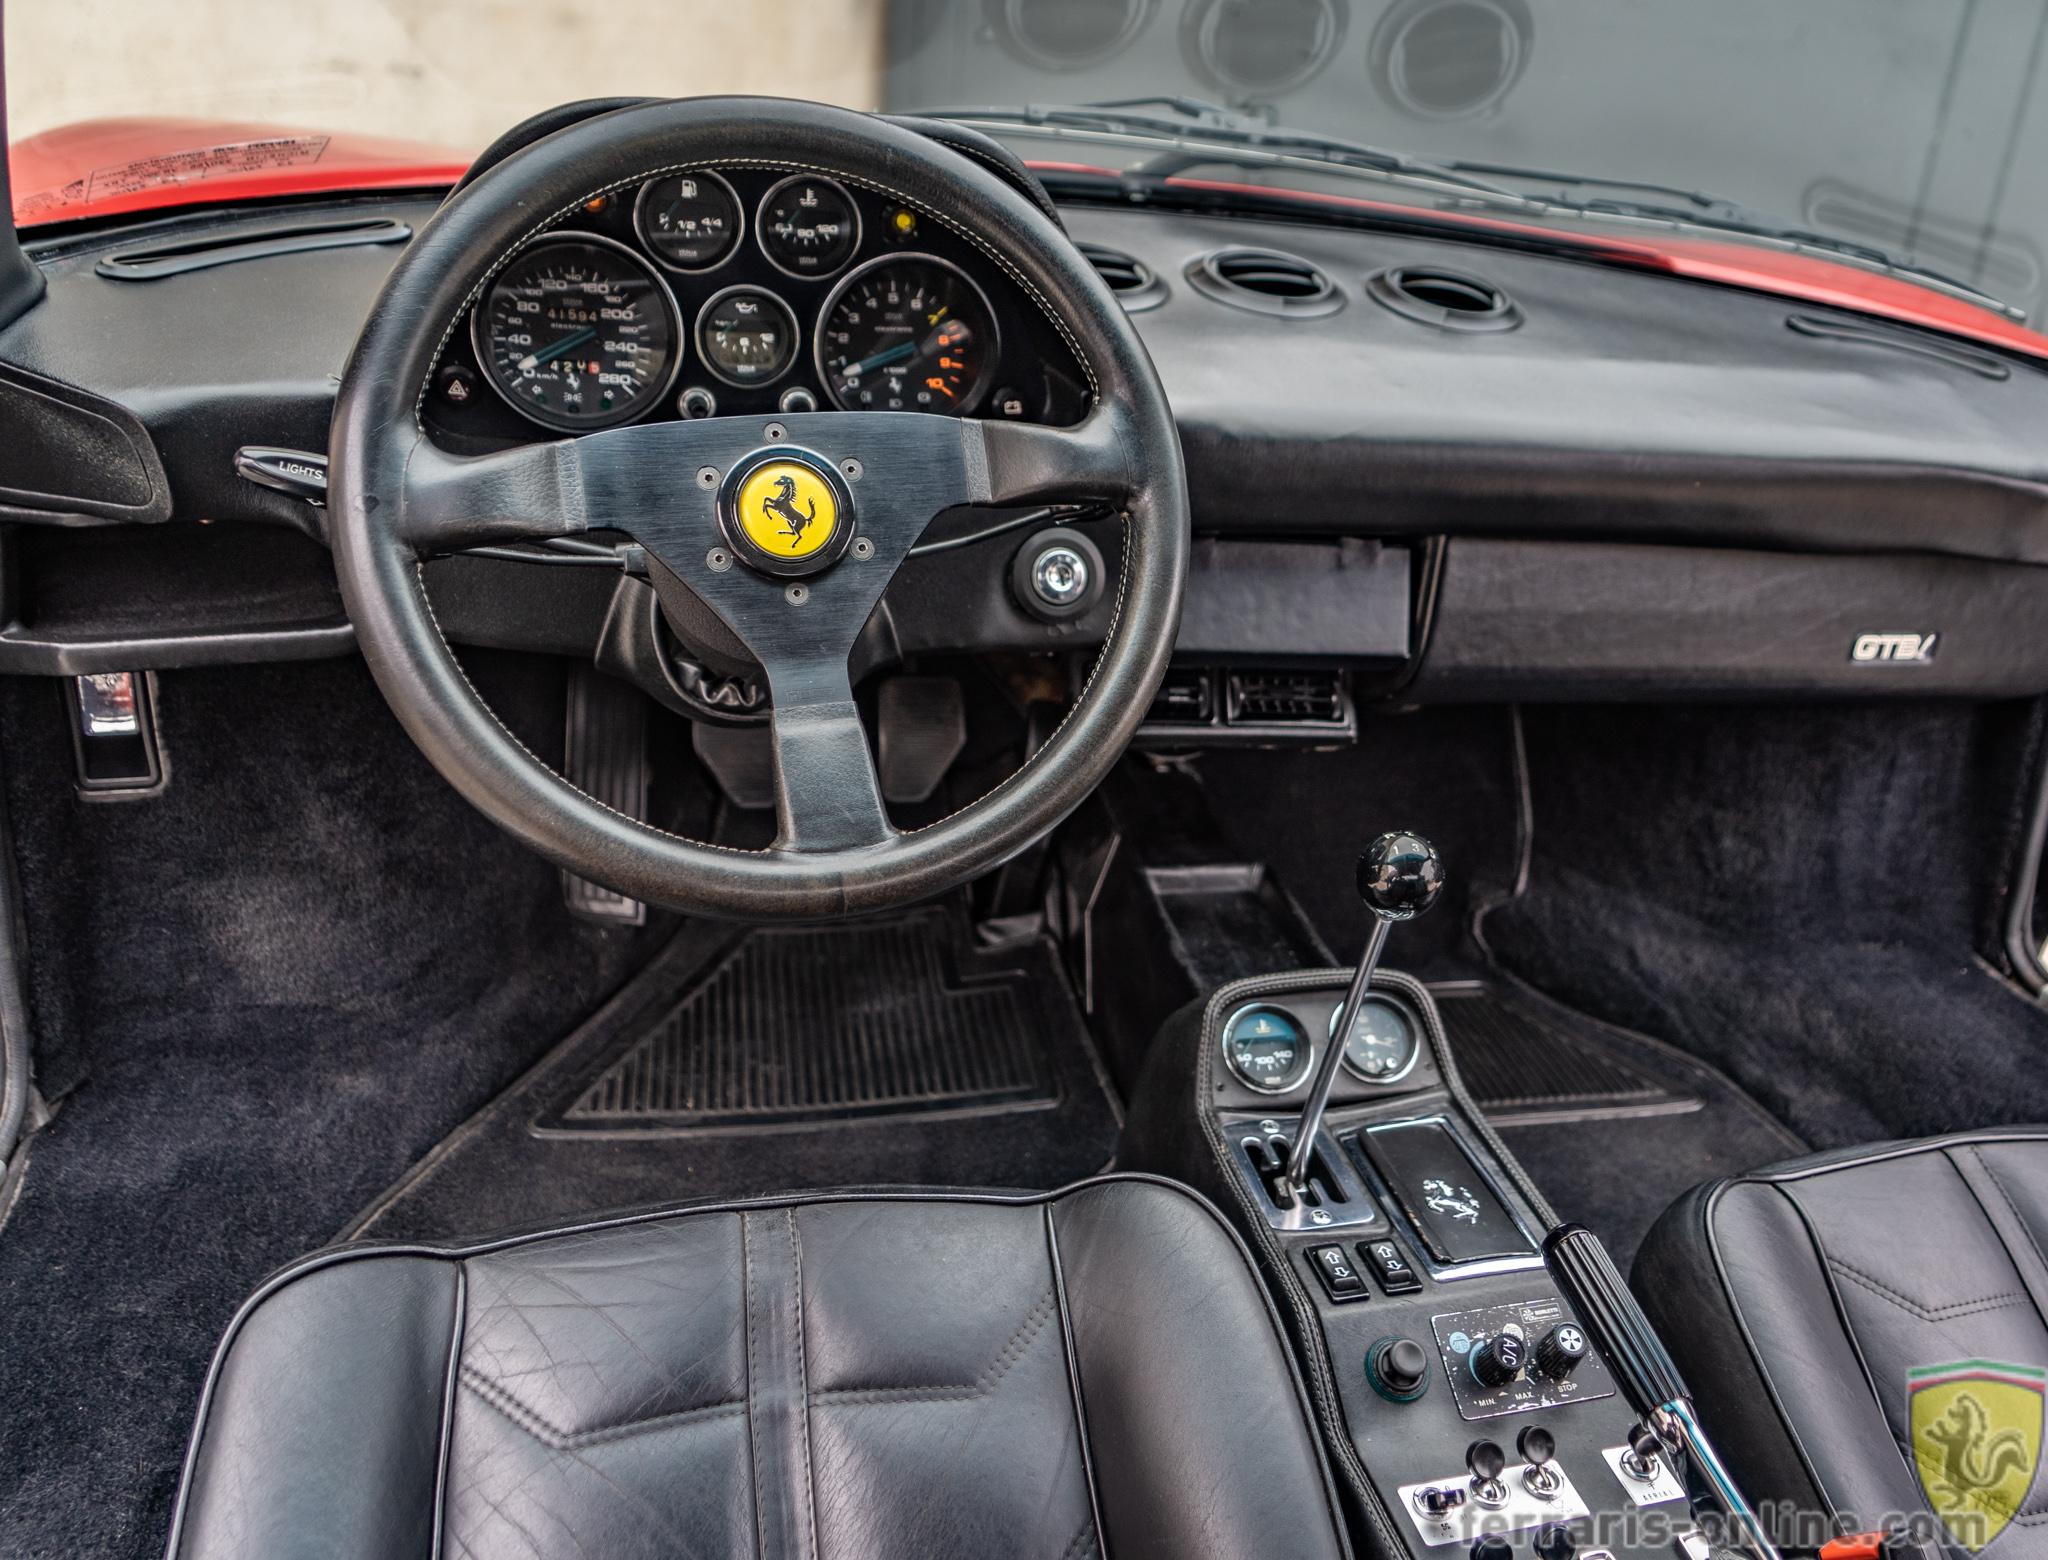 Ferrari 308 interior - Cockpit